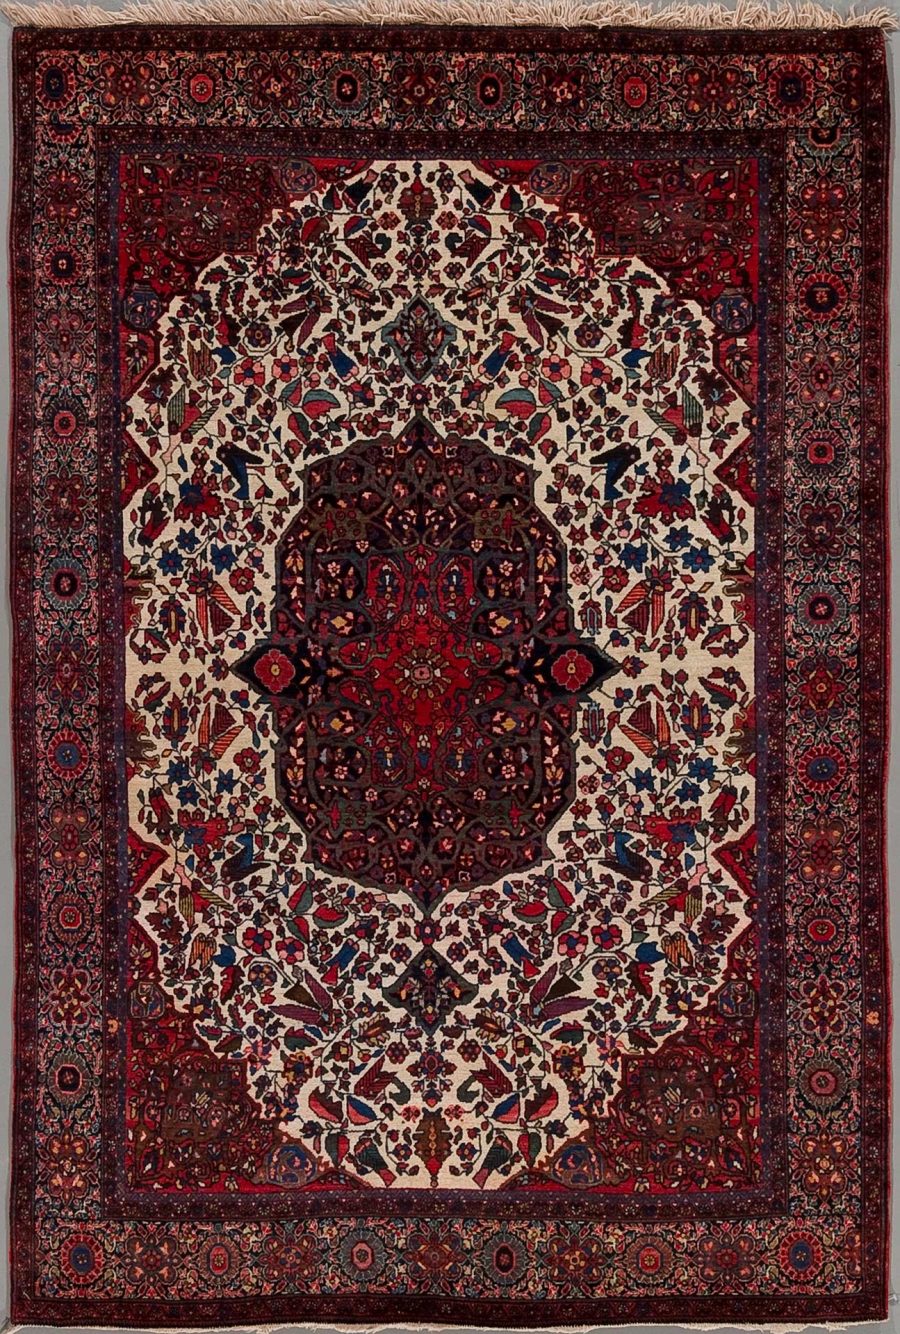 Traditioneller handgeknüpfter persischer Teppich mit aufwendigem Muster in Rot-, Blau-, Beige- und Schwarztönen, umgeben von mehreren dekorativen Bordüren.